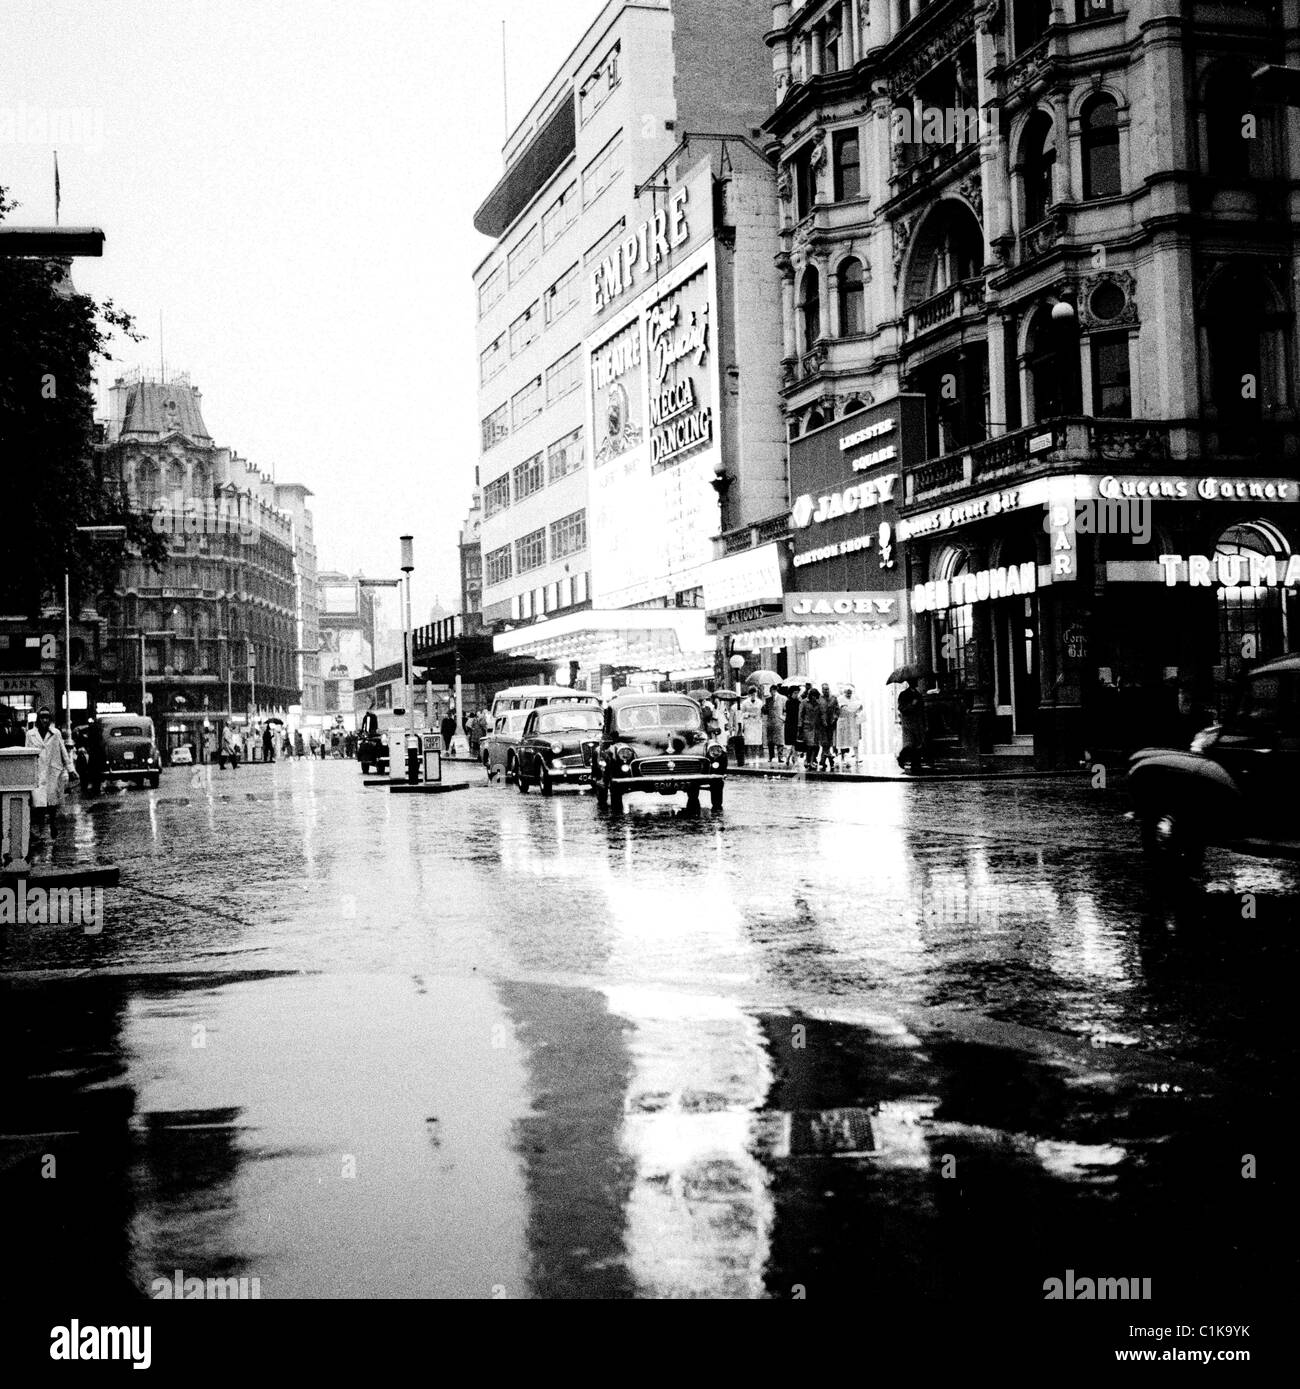 1960er Jahre London. Autos bewegen sich langsam auf den Regen durchnässt Straße außerhalb der Empire-Kino im West End in diesem historischen Bild. Stockfoto